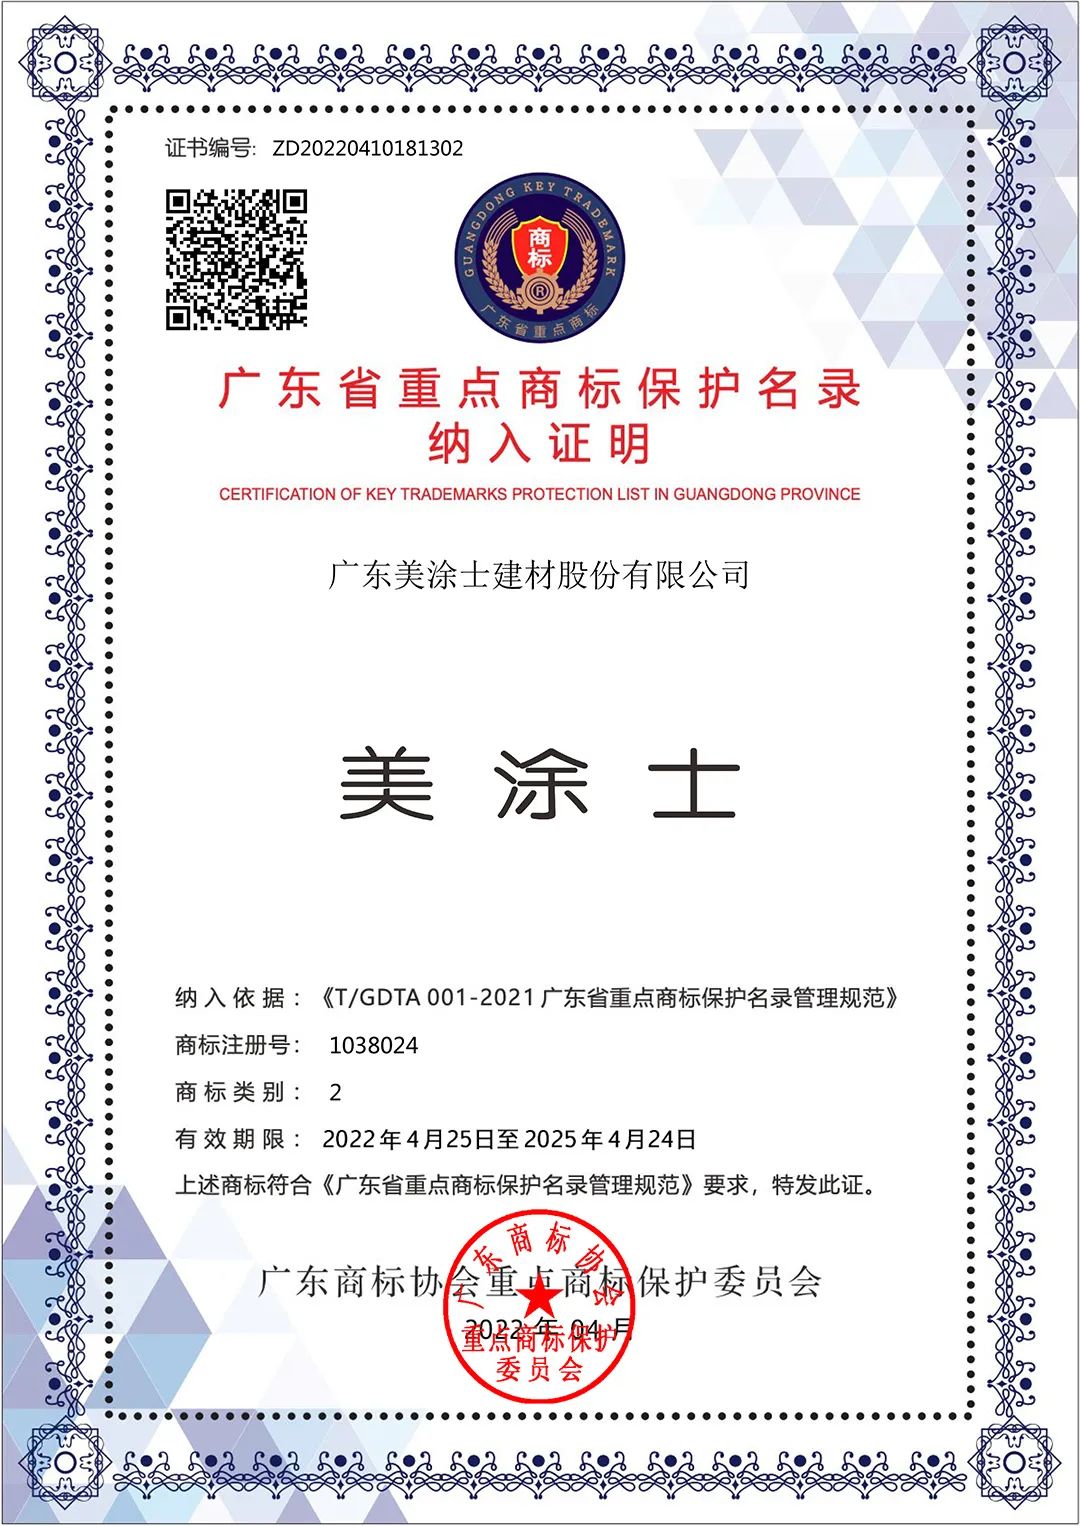 美涂士等涂料品牌被纳入广东省重点商标保护名录